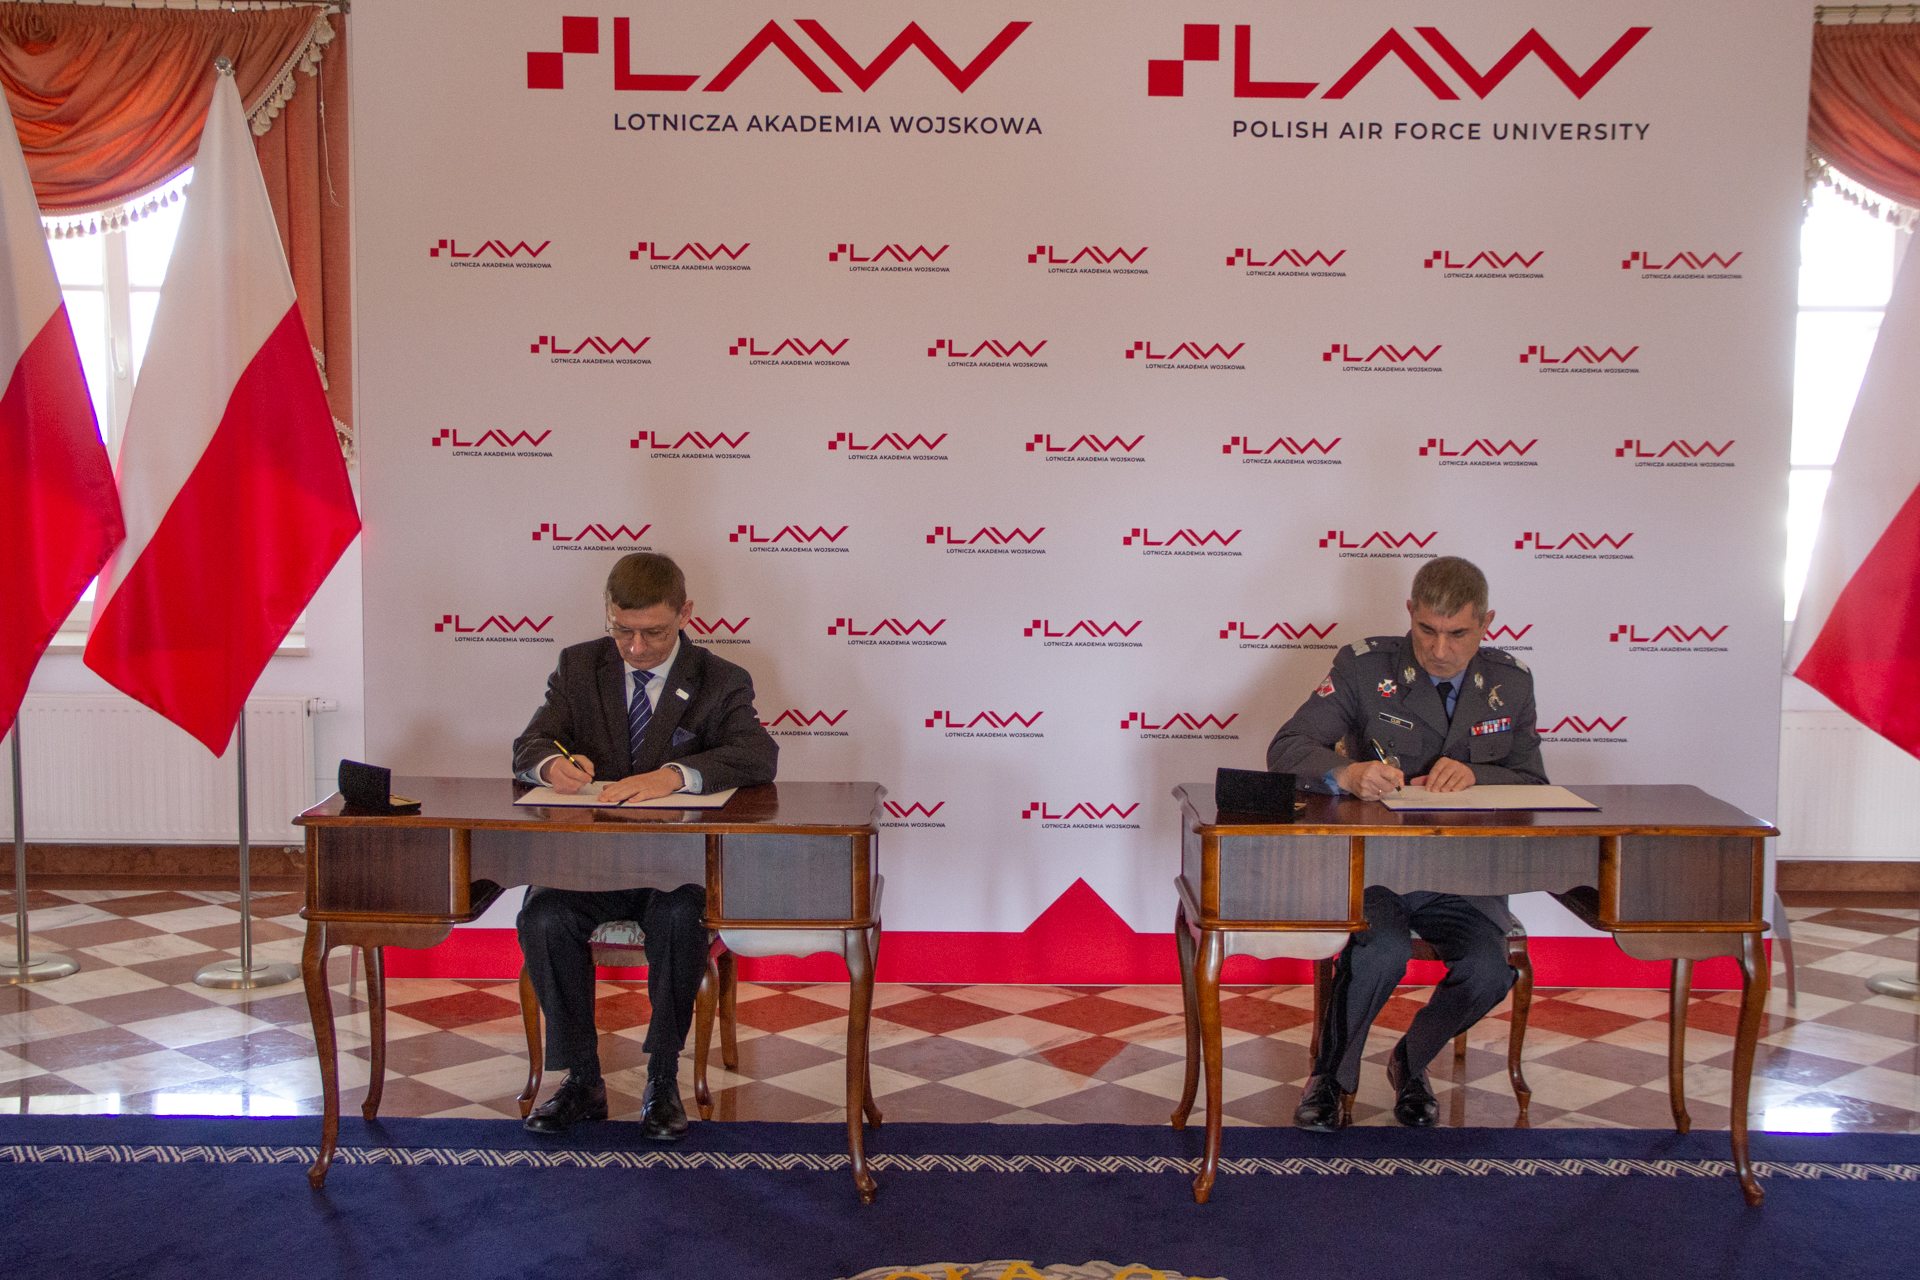 Nowe kadry branży kosmicznej – porozumienie POLSA z Lotniczą Akademią Wojskową